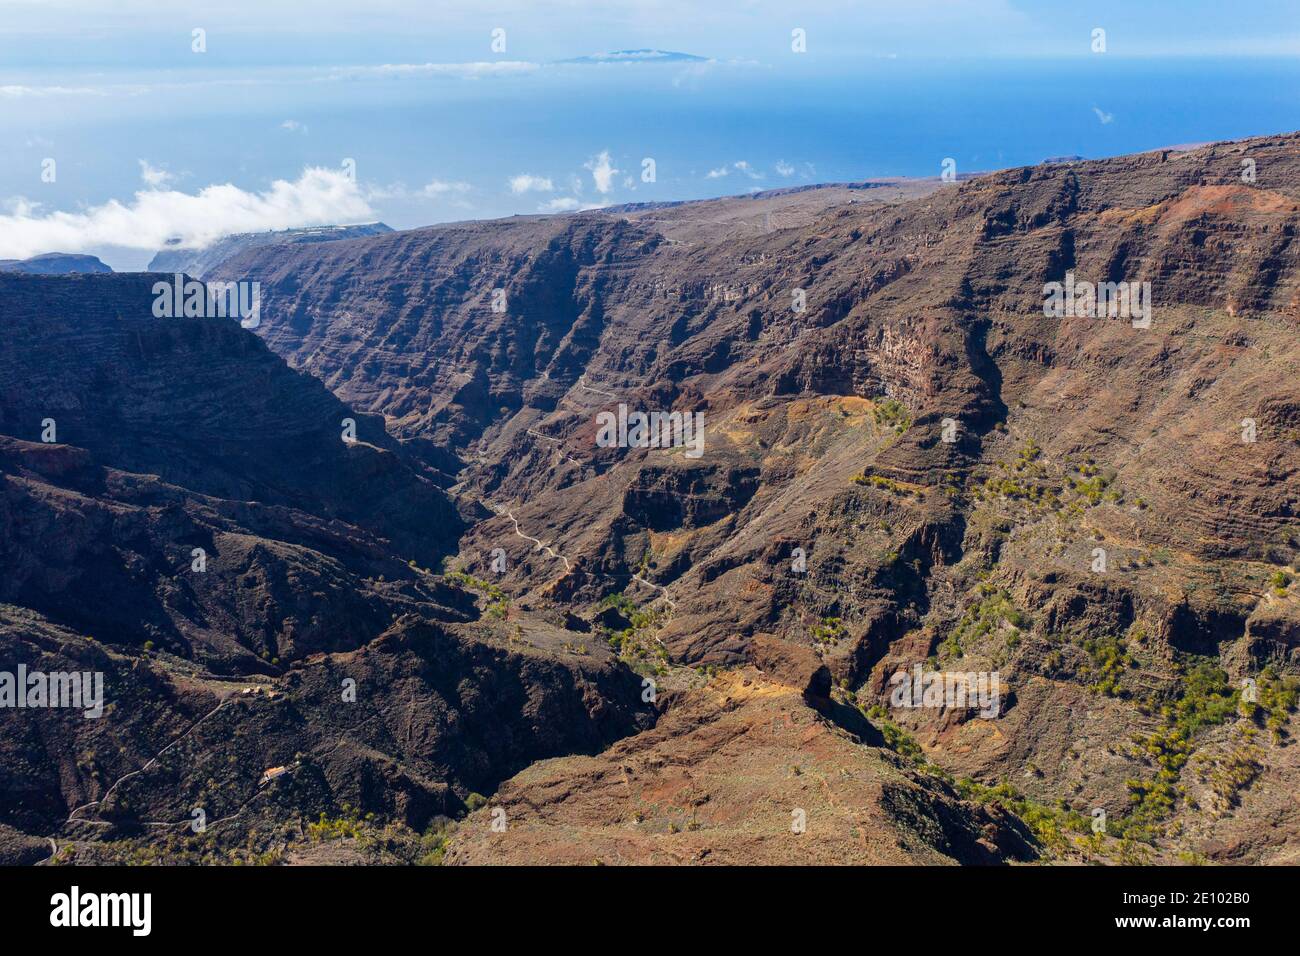 Barranco de Erque, drone image, La Gomera, Canary Islands, Spain, Europe Stock Photo